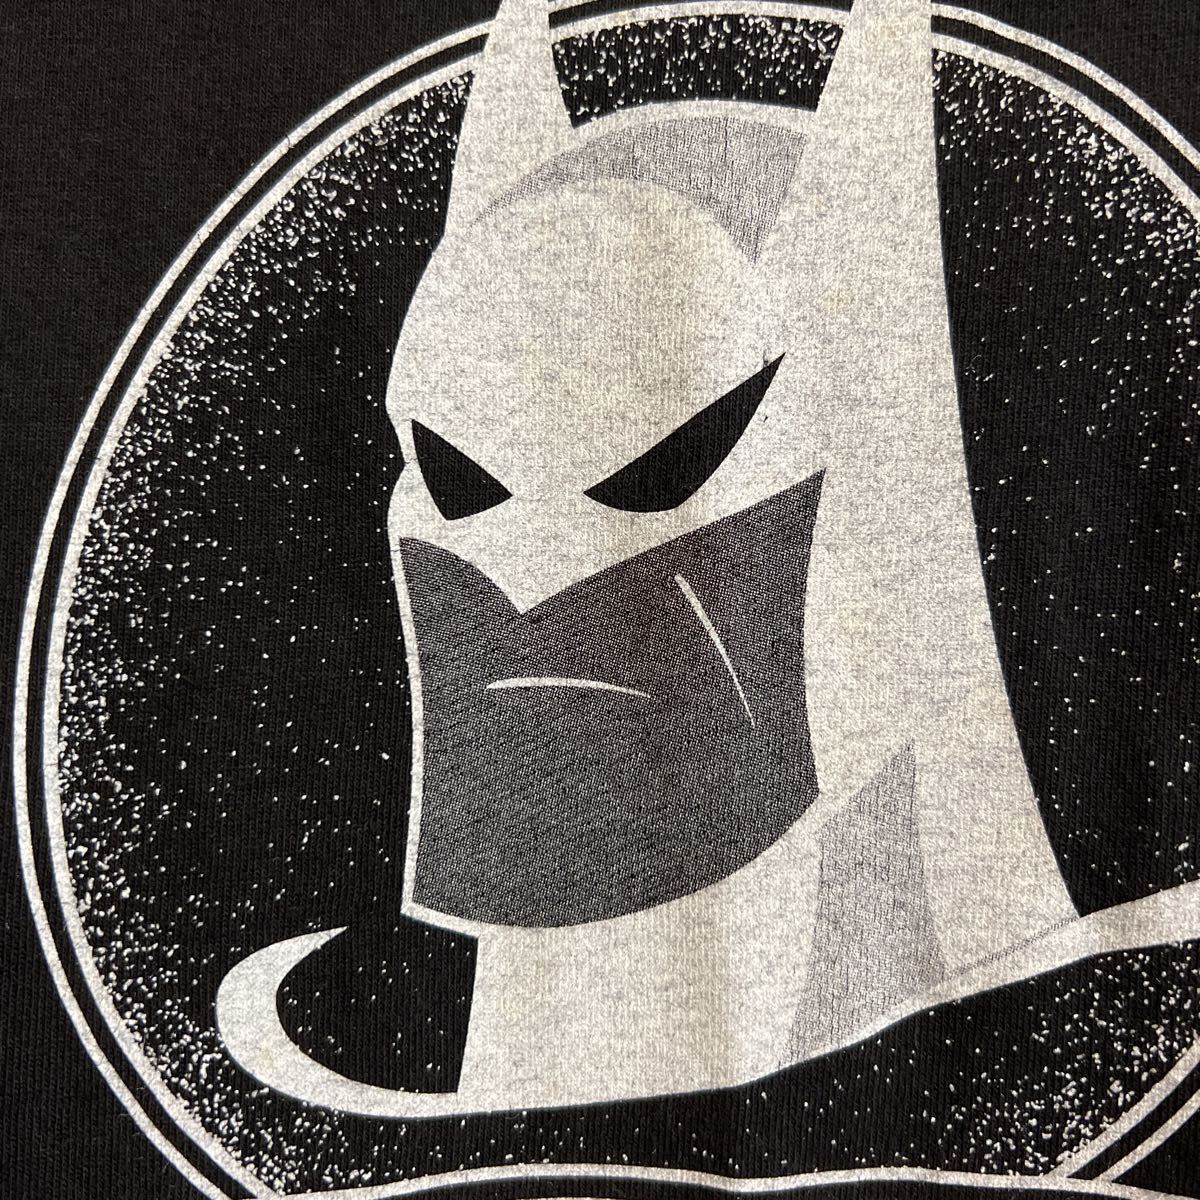 90s USA製 BATMAN バットマン DC Comic 1996 ロゴ プリント ビンテージ 